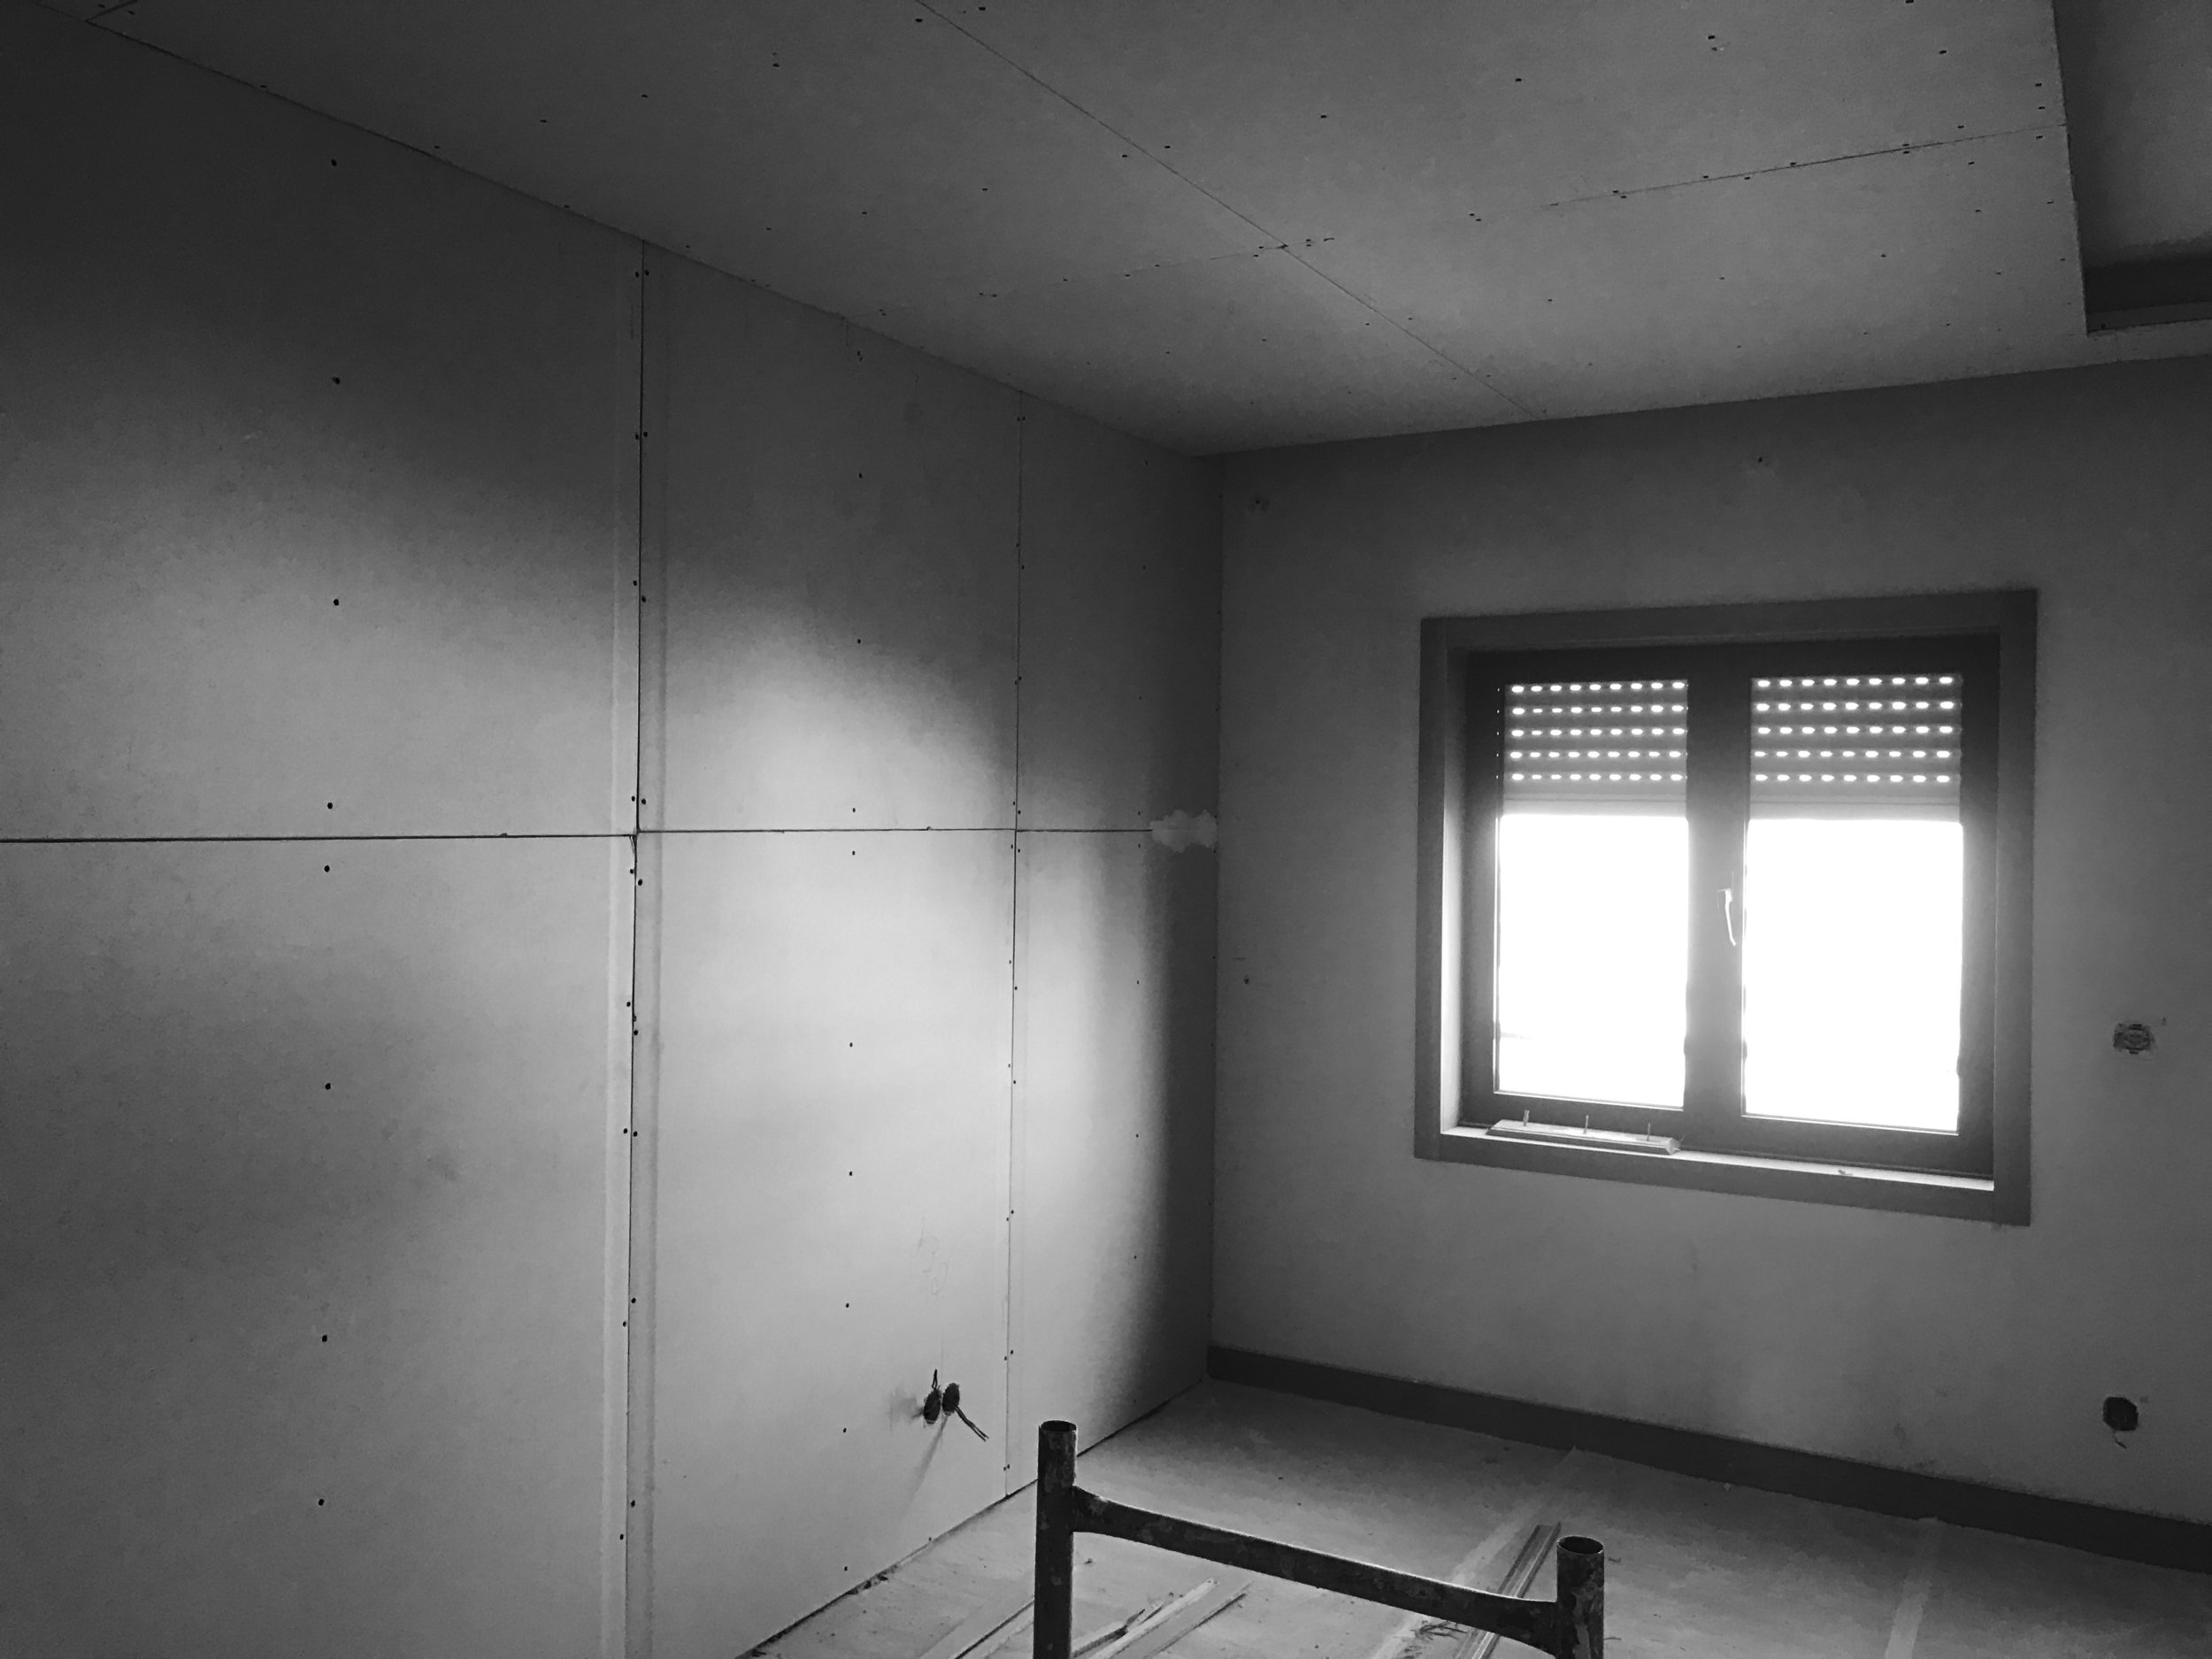 Apartamento Azul Farol - Porto - EVA evolutionary architecture - EVA atelier - Arquitecto - Remodelação (7).jpg